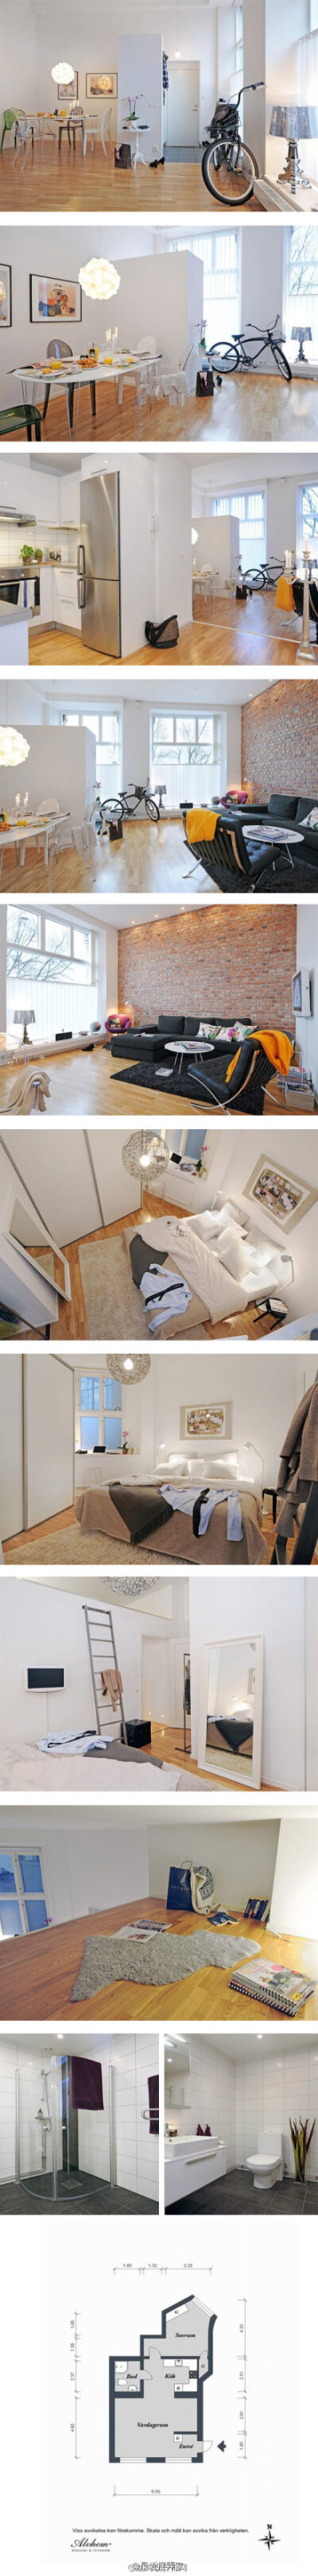 【瑞典清新白色公寓】瑞典公寓并不是十分的宽敞，白色的格调和浅木色的地板在这里相遇，带来纯净与舒适感！很赞～